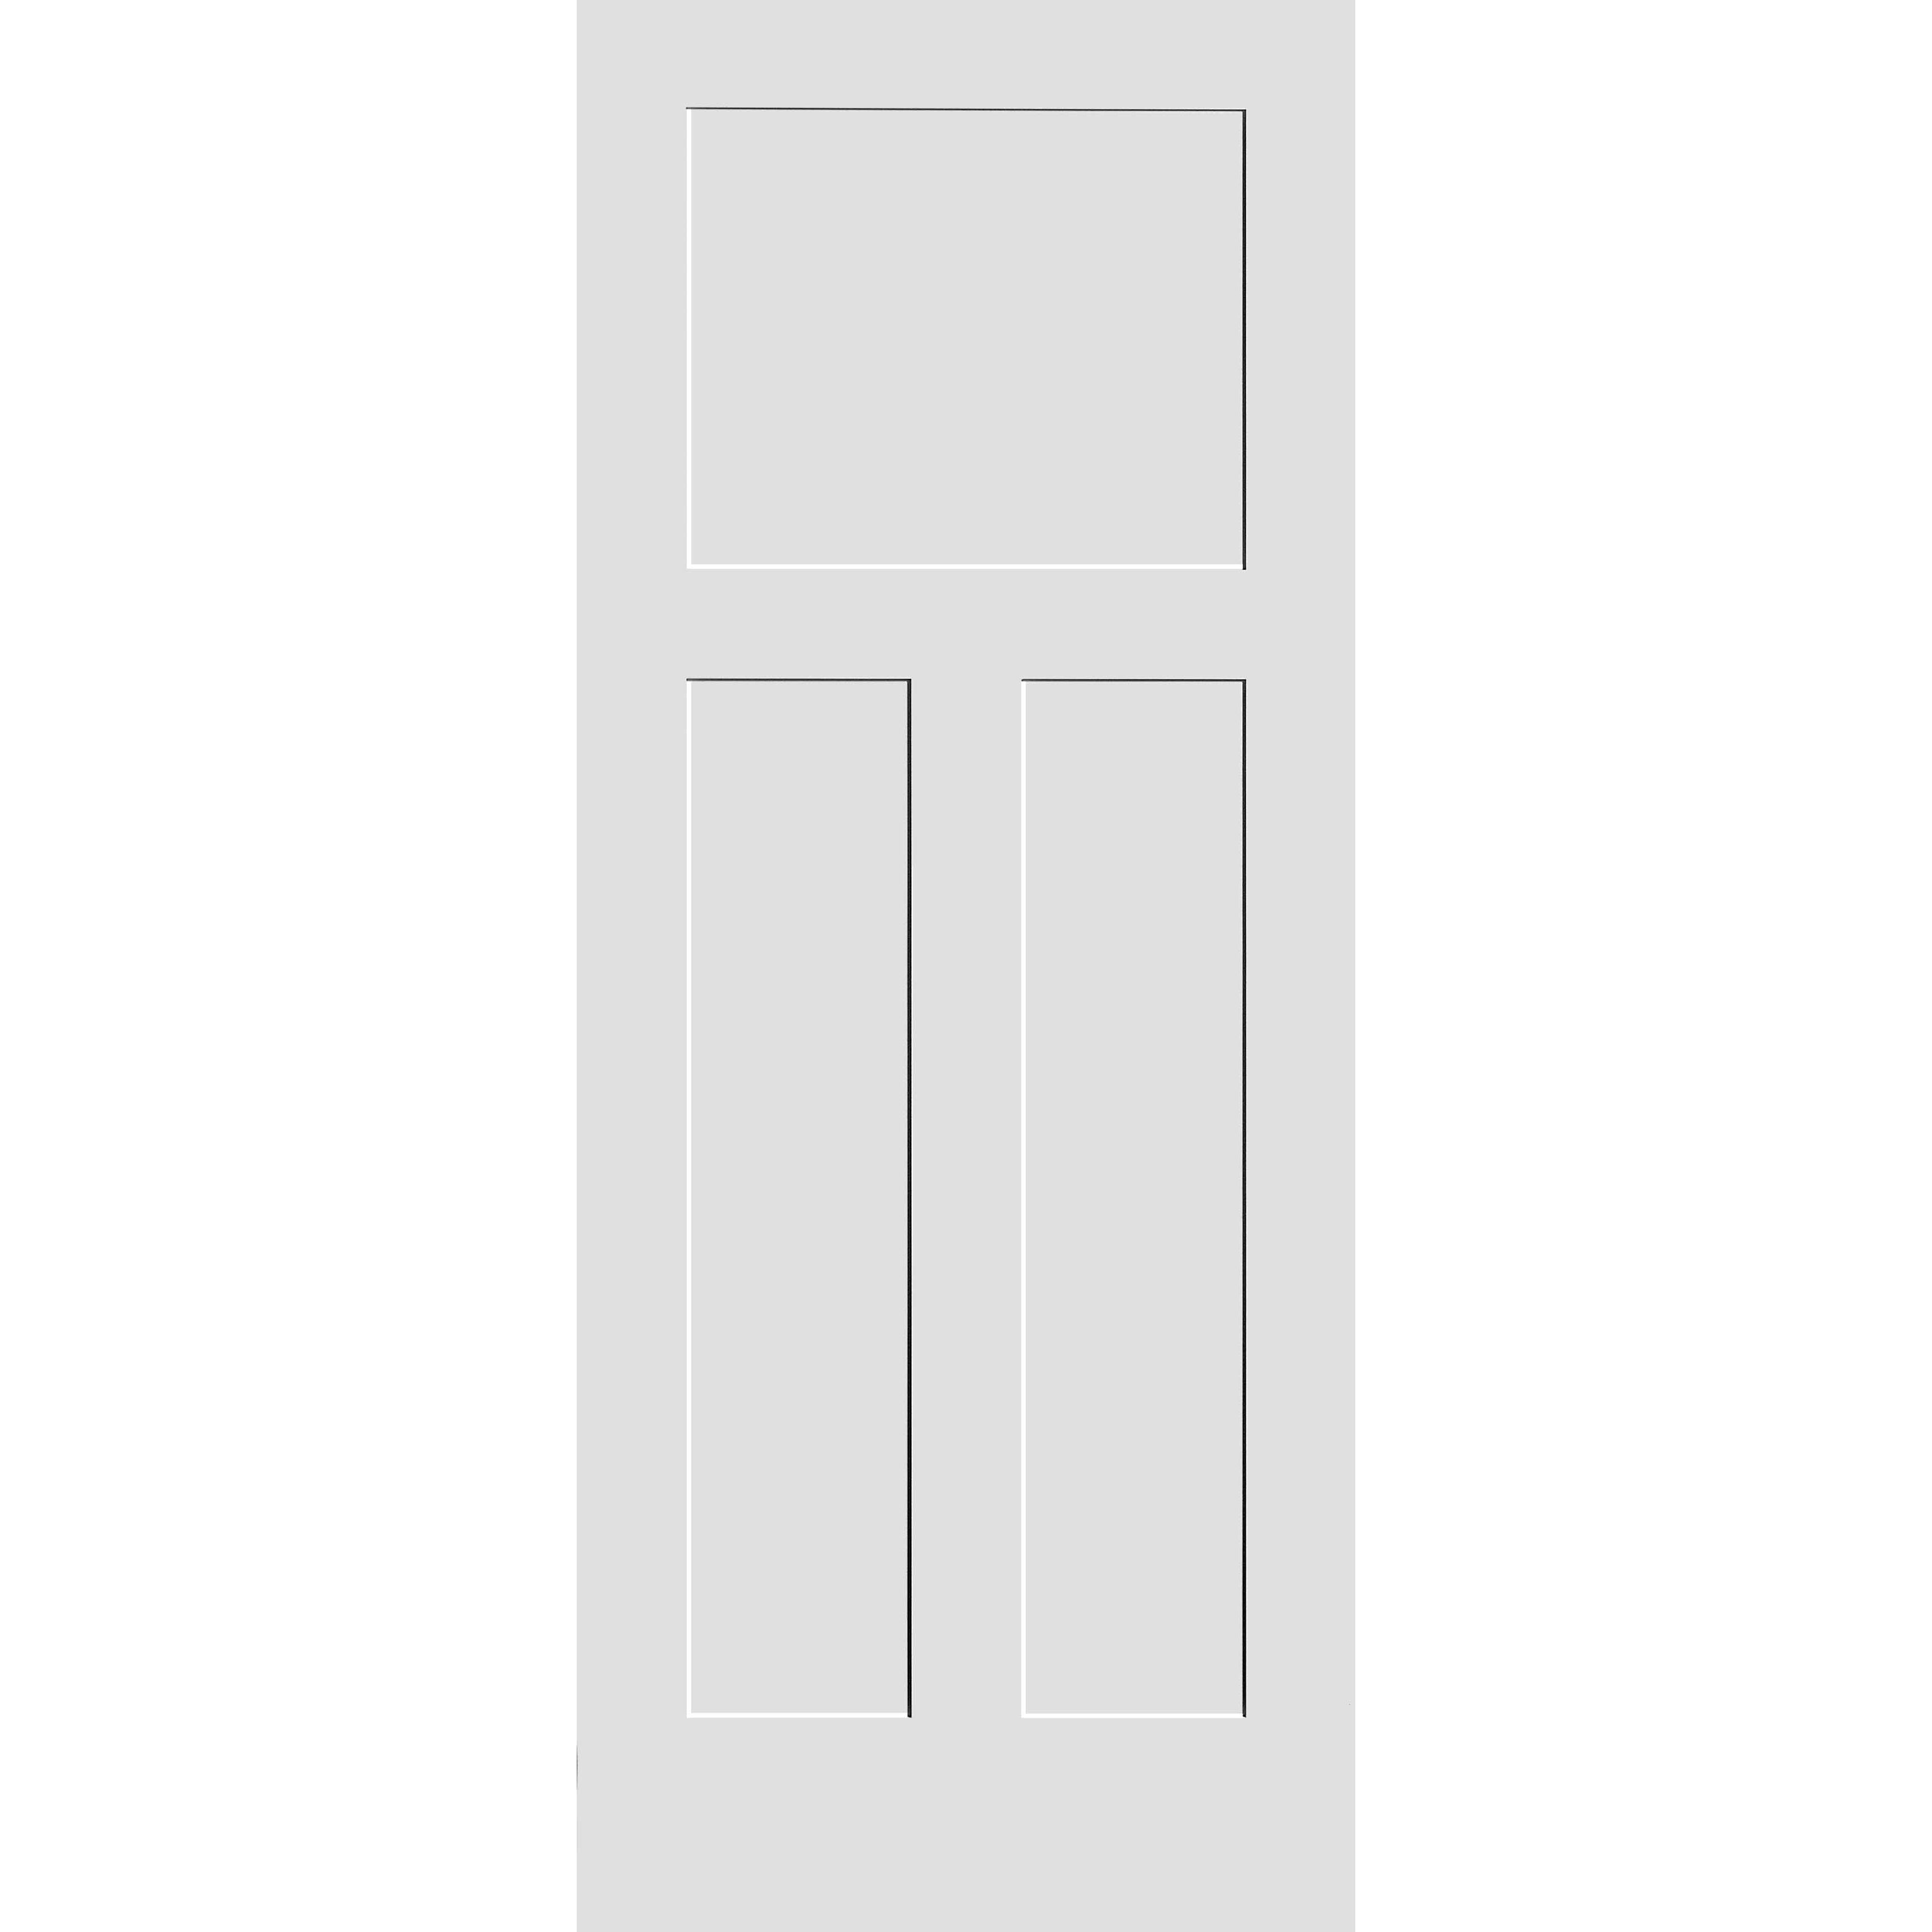 32X80 #8403 MDF PRIMED SHAKER PANEL INTERIOR DOOR